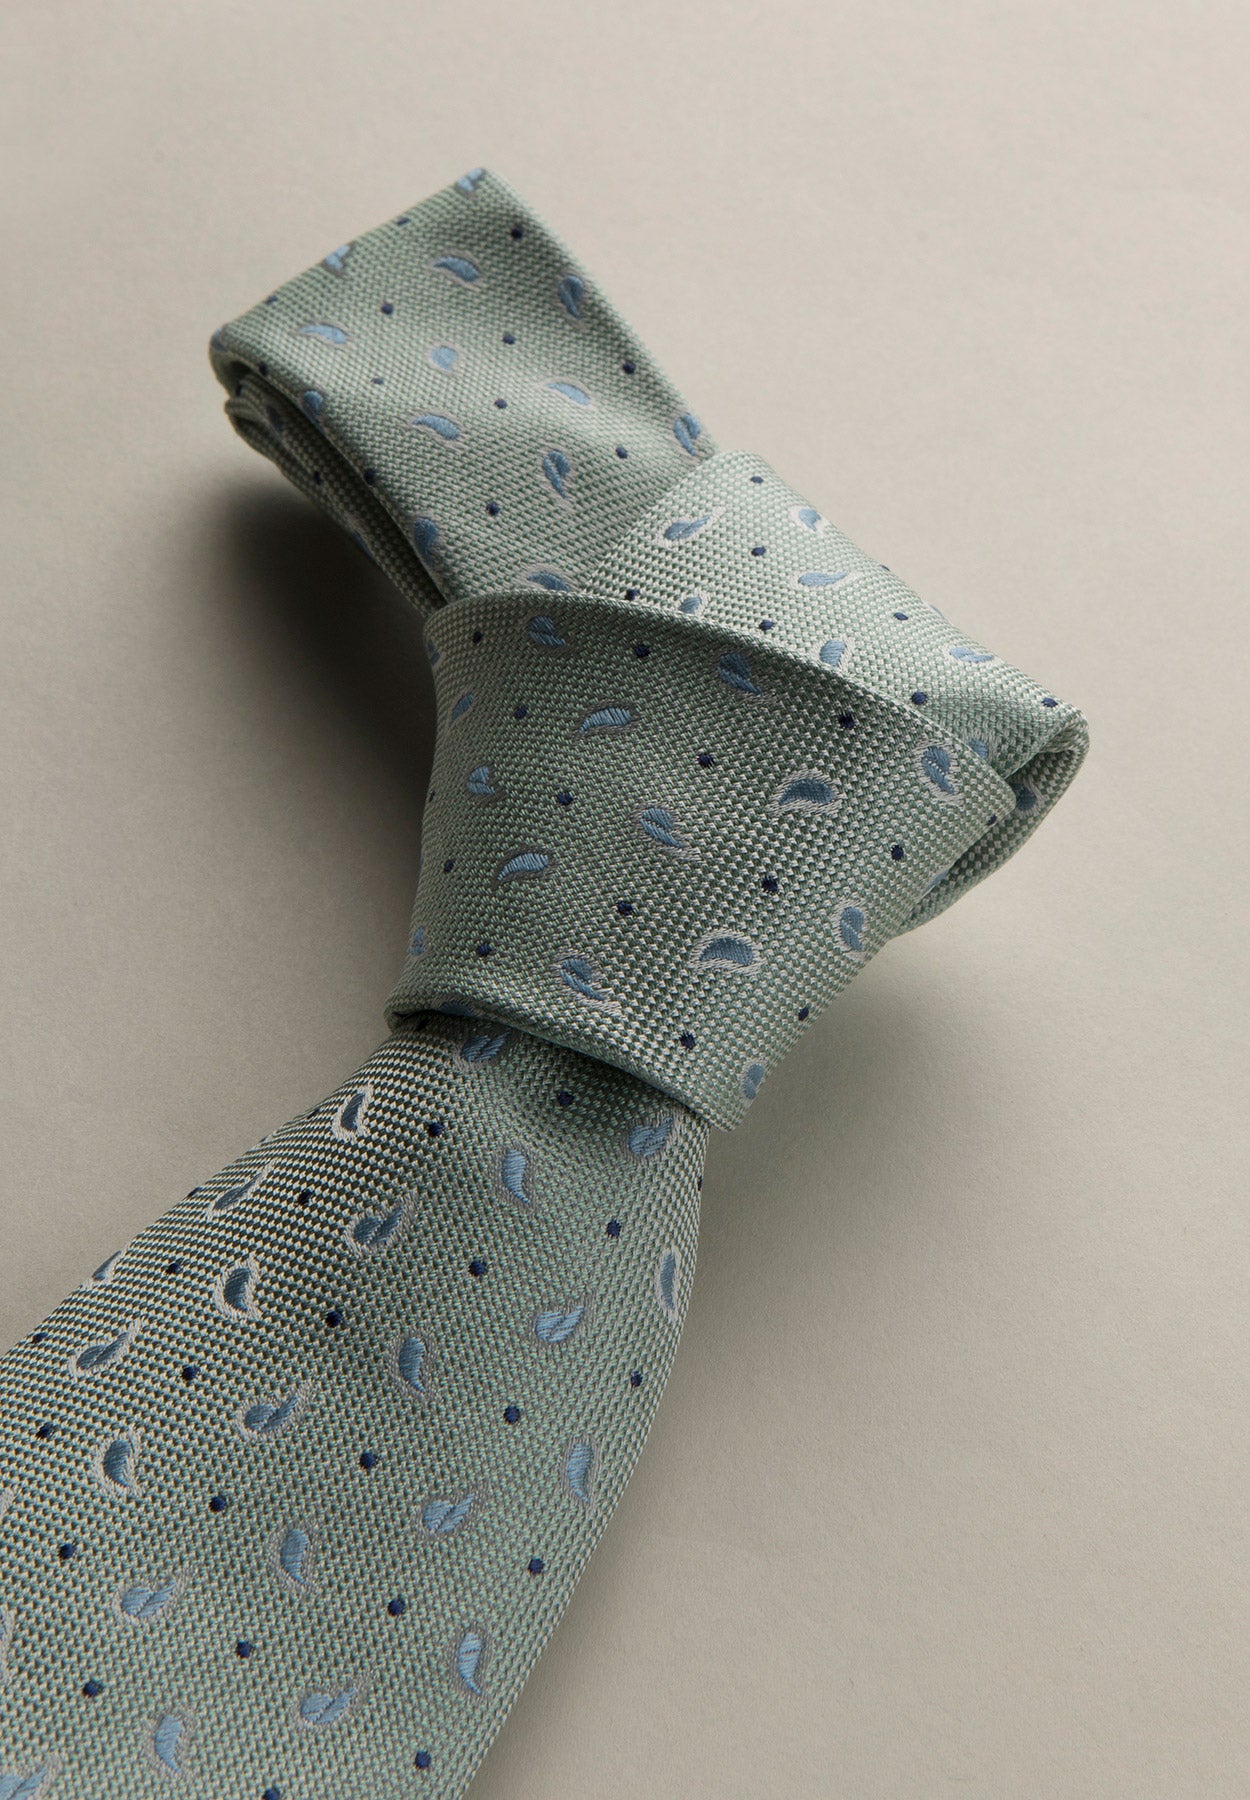 Aquagrüne Krawatte mit Kaschmir- und Seidenmuster